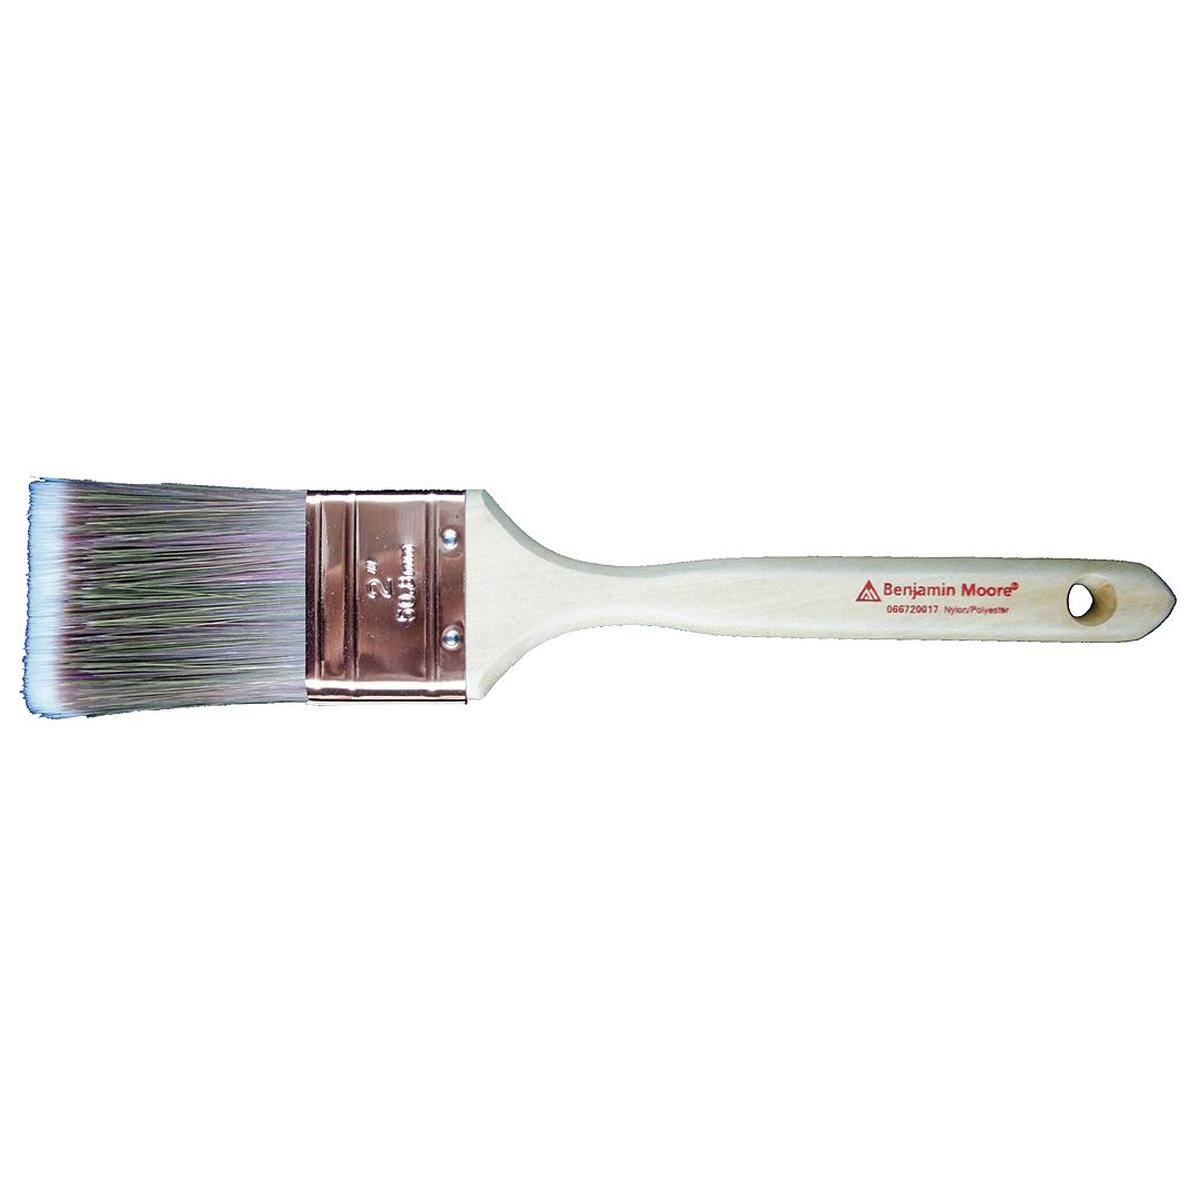 Benjamin Moore 066715017 Paint Brush Flat Sash - 1-1/2"